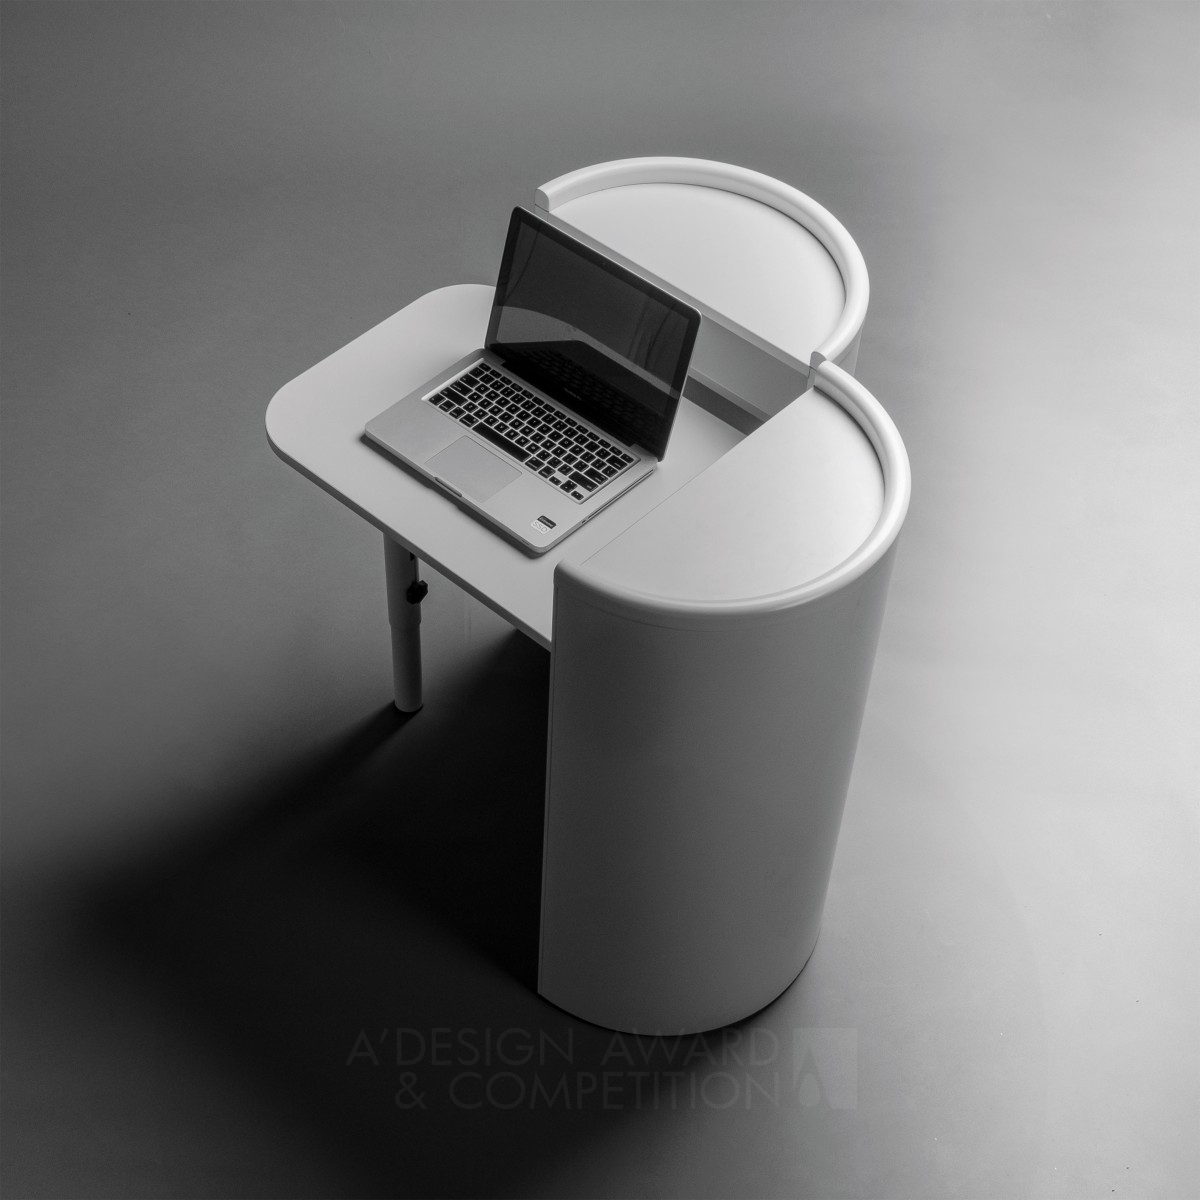 Miguel Arruda wins Silver at the prestigious A' Furniture Design Award with Cilindro Desk.